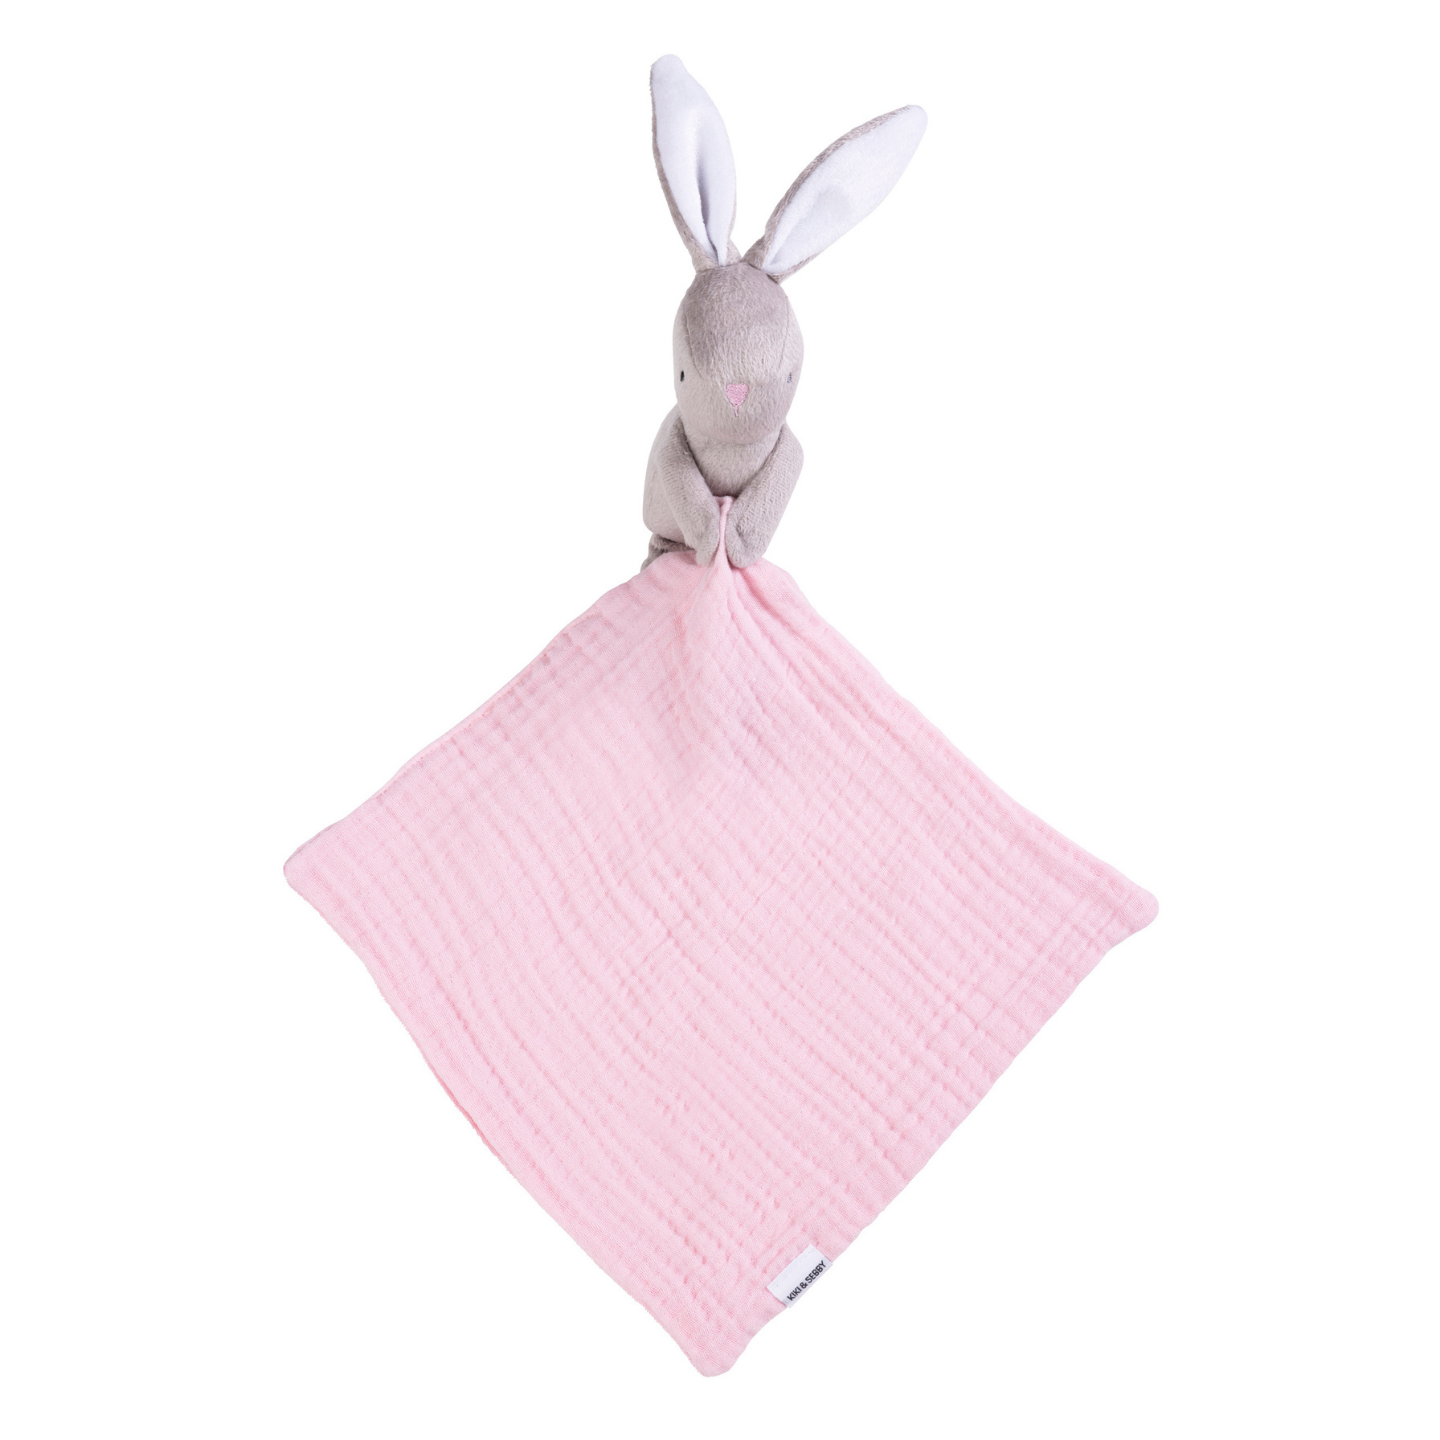 Kiki and Sebby Bunny Comforter (Pink Muslin)